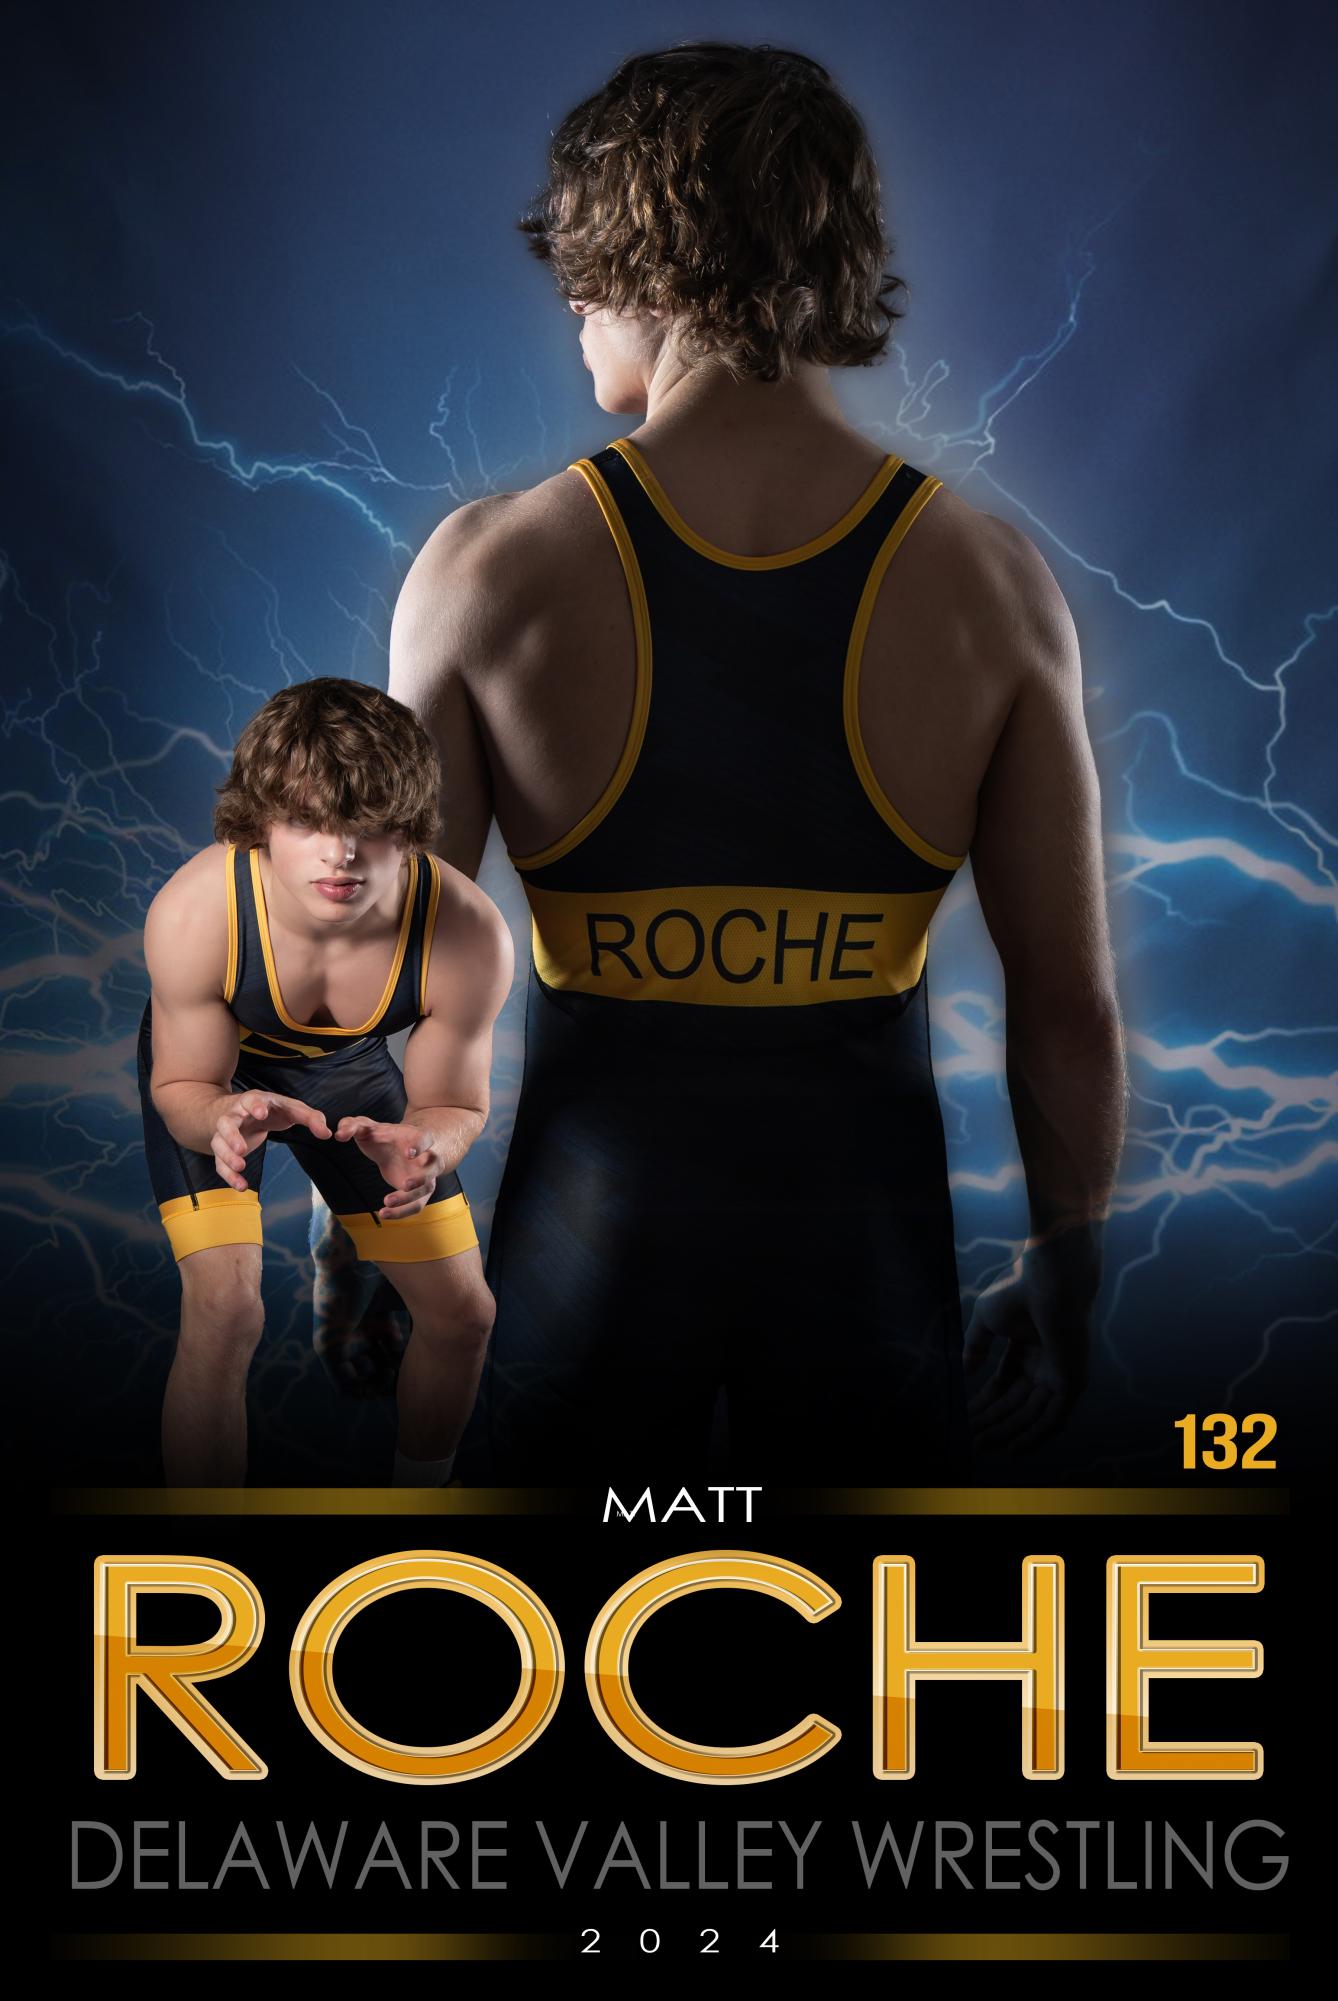 Matt Roche